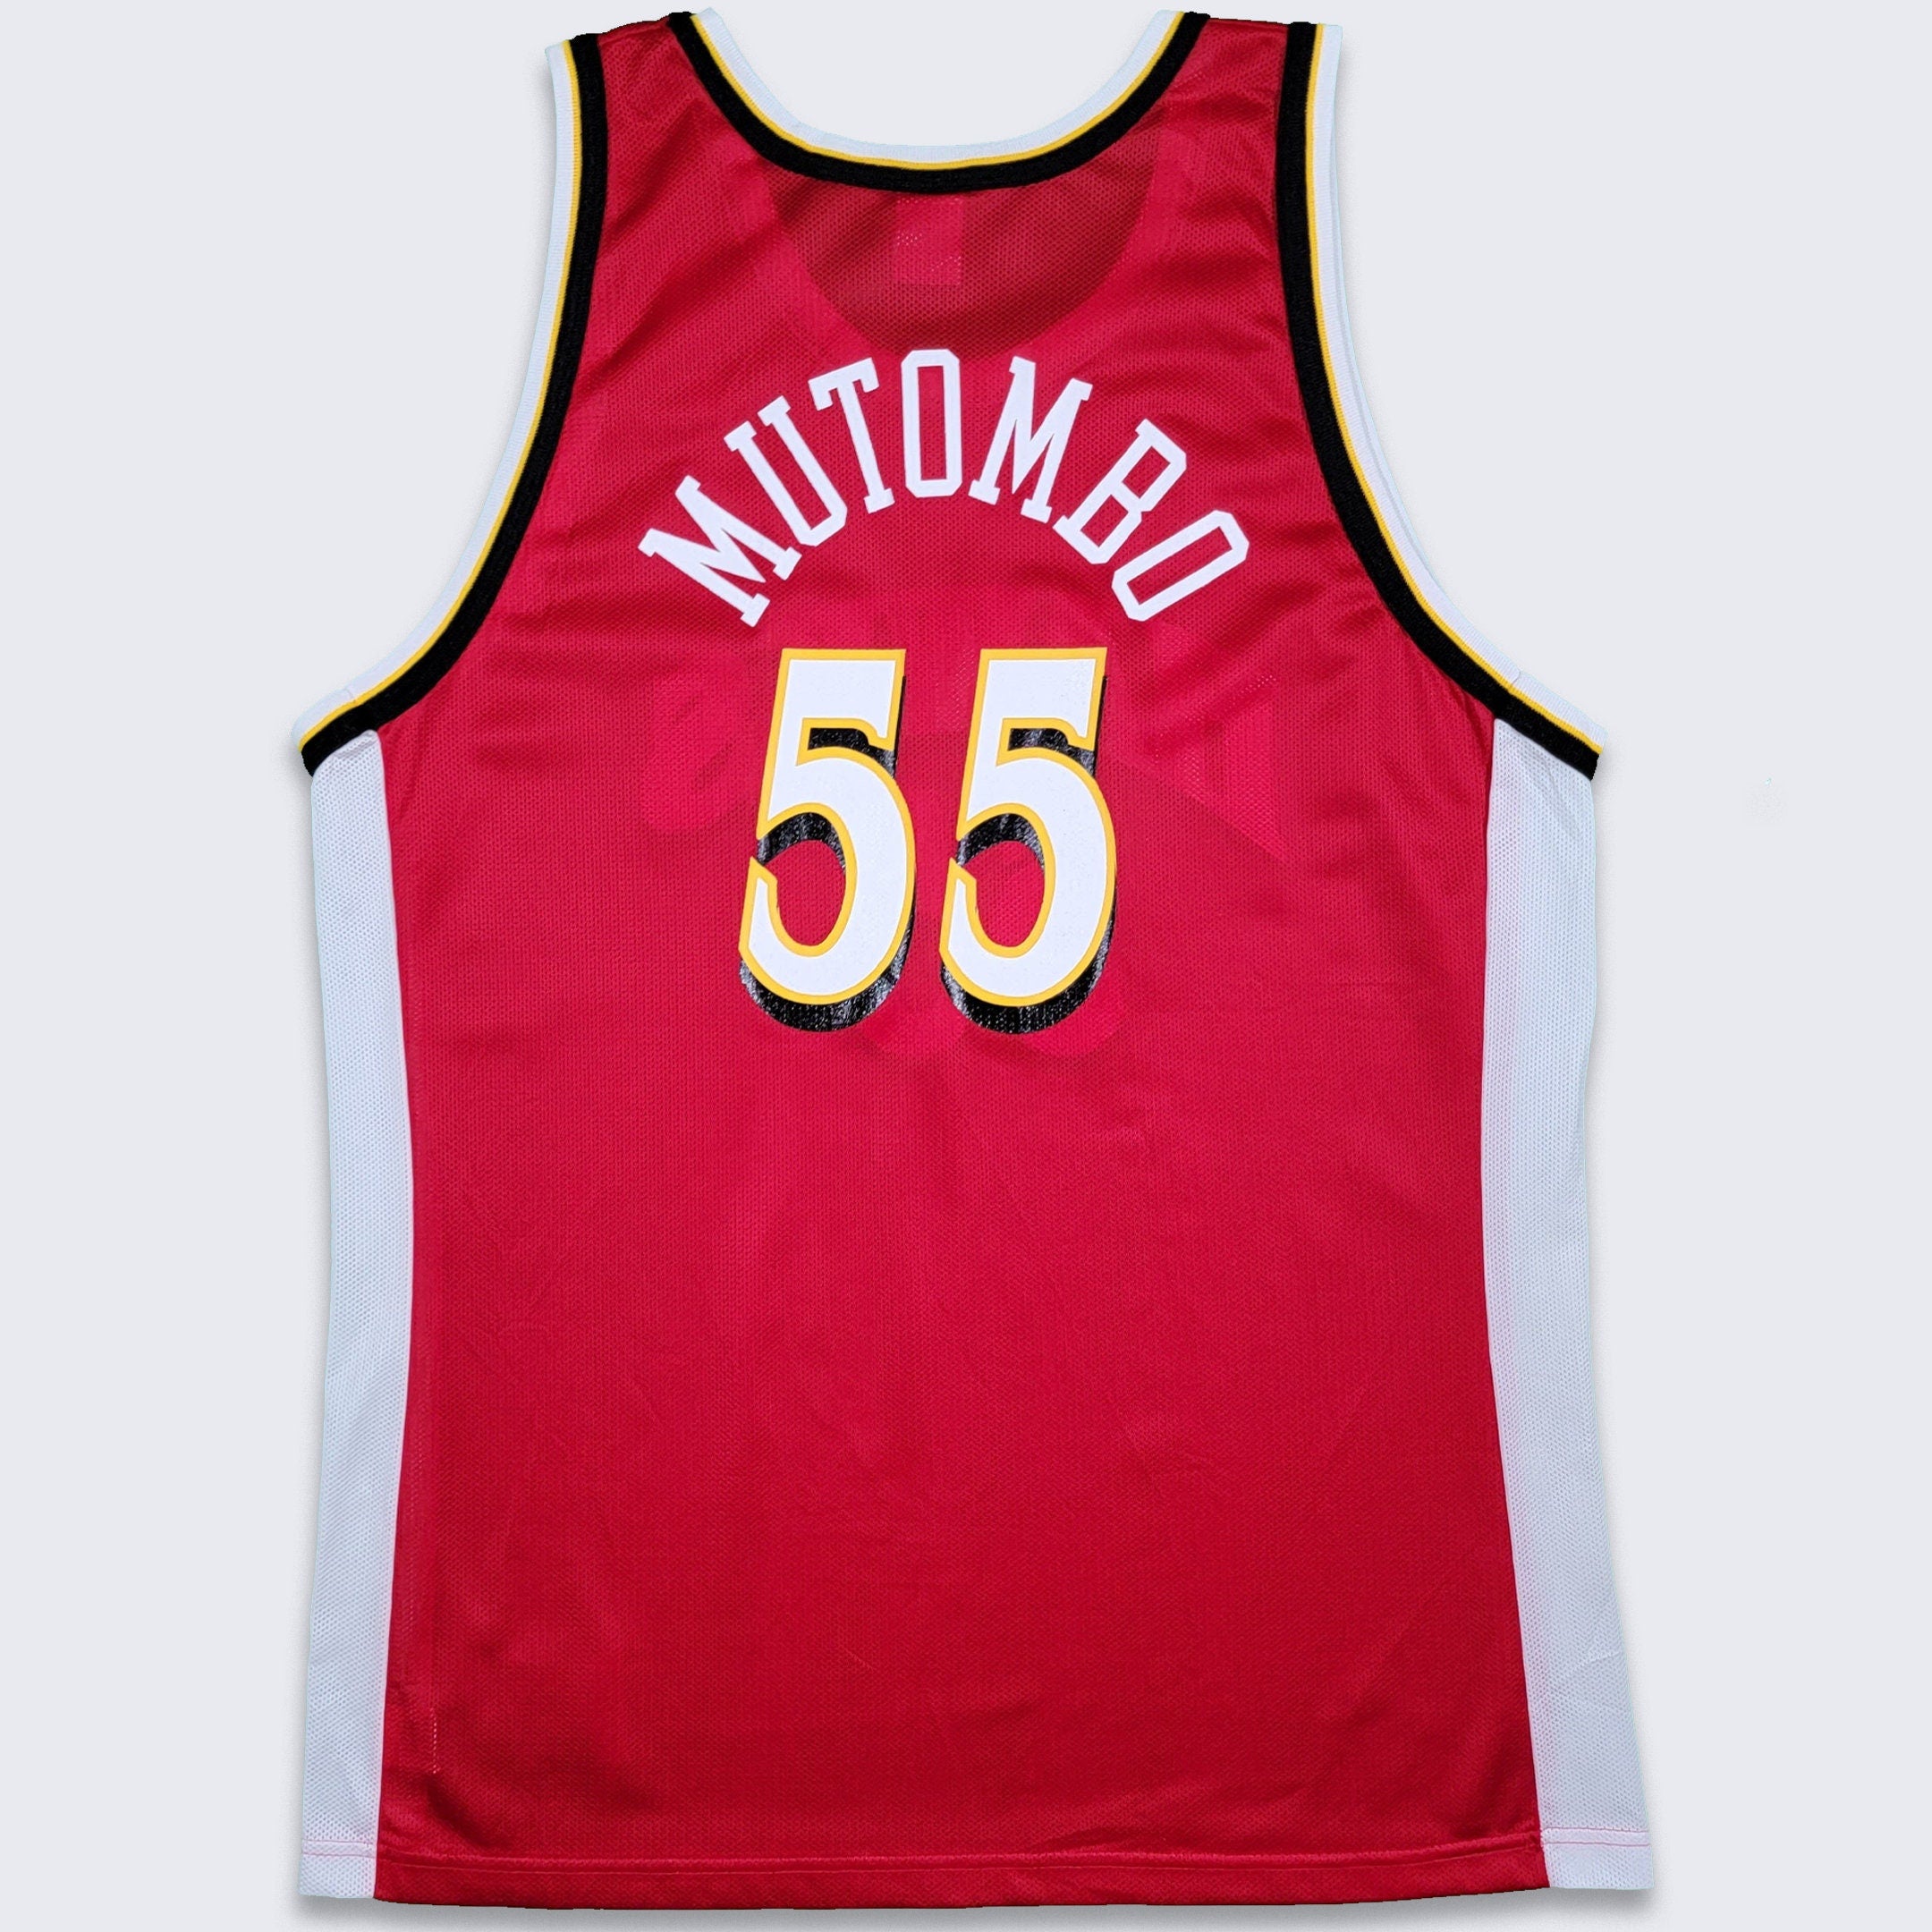 Atlanta Hawks Vintage Dikembe Mutombo Champion Basketball Jersey - Siz